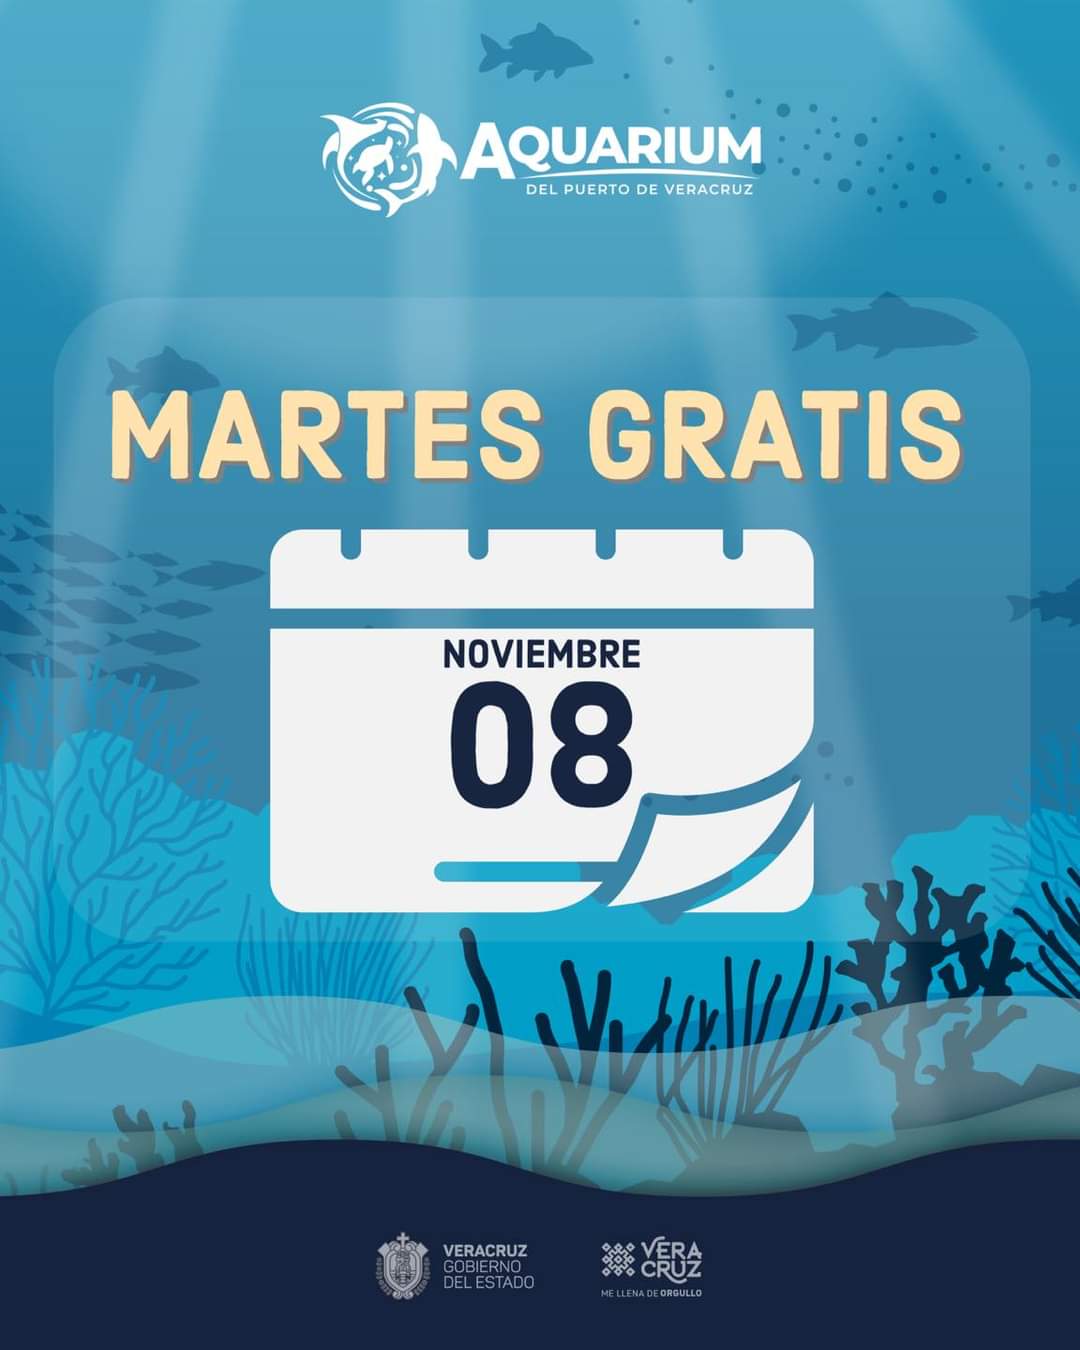 Martes 8 de noviembre, Aquarium del Puerto de Veracruz tendrá entrada gratuita